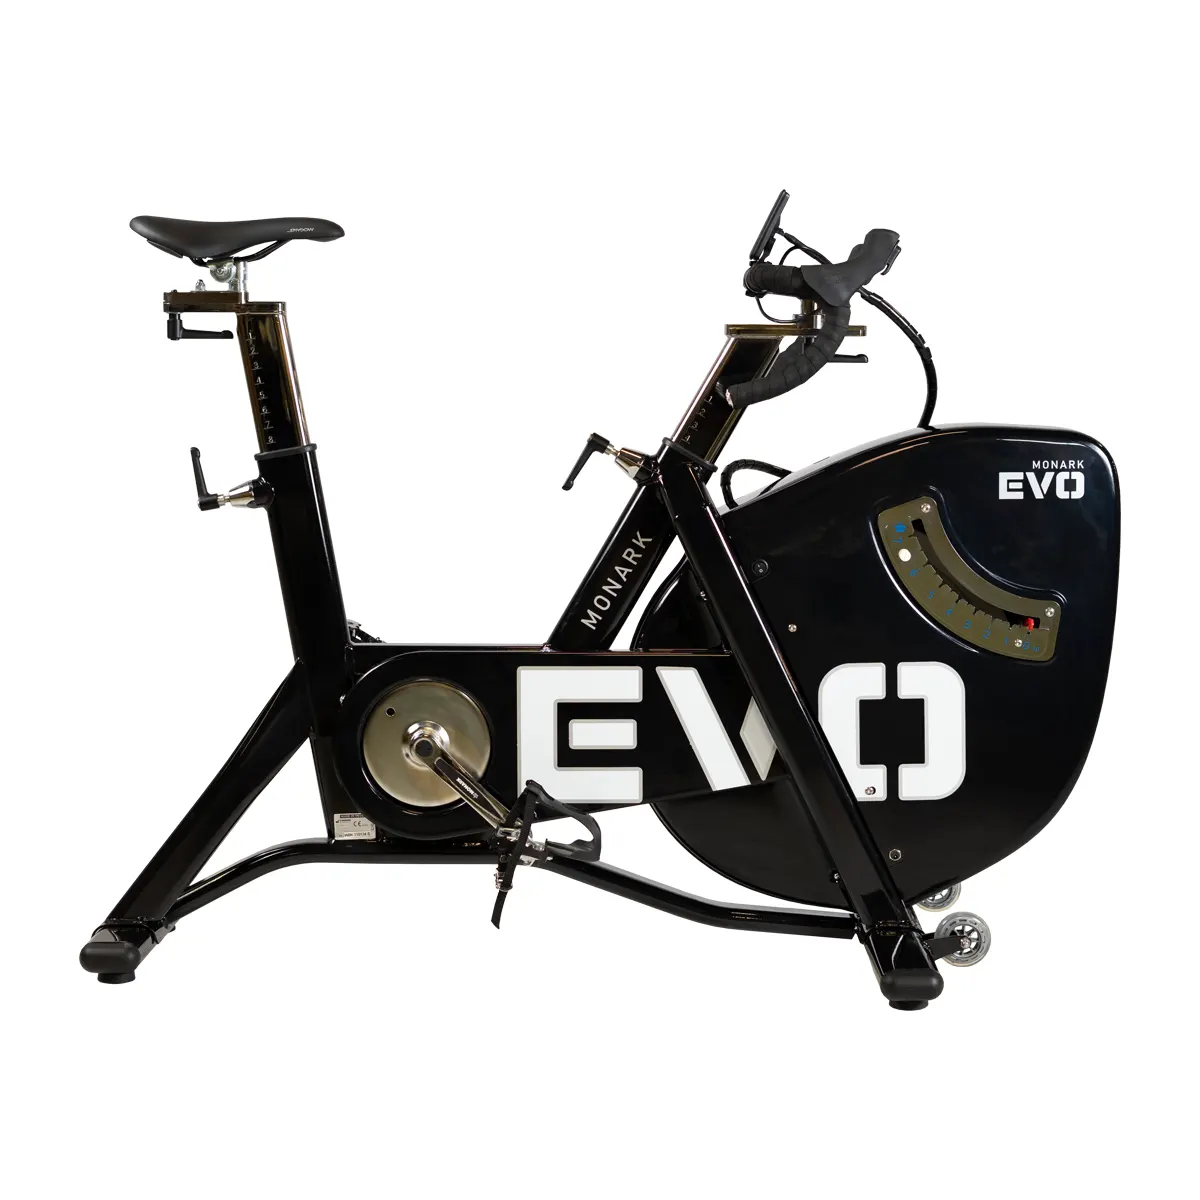 Monark ergometer bike EVO